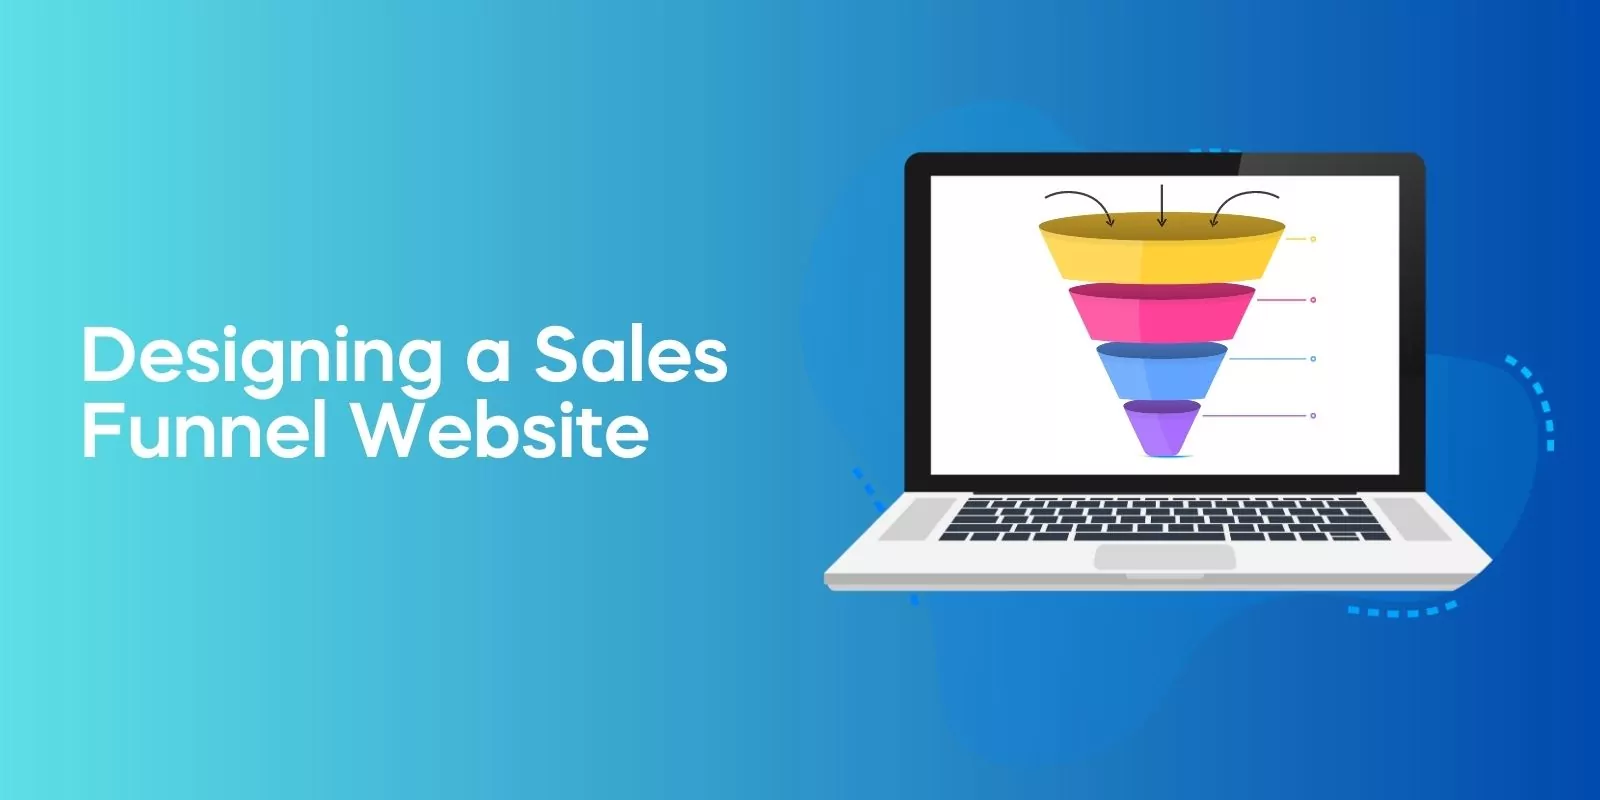 Designing a Sales Funnel Website